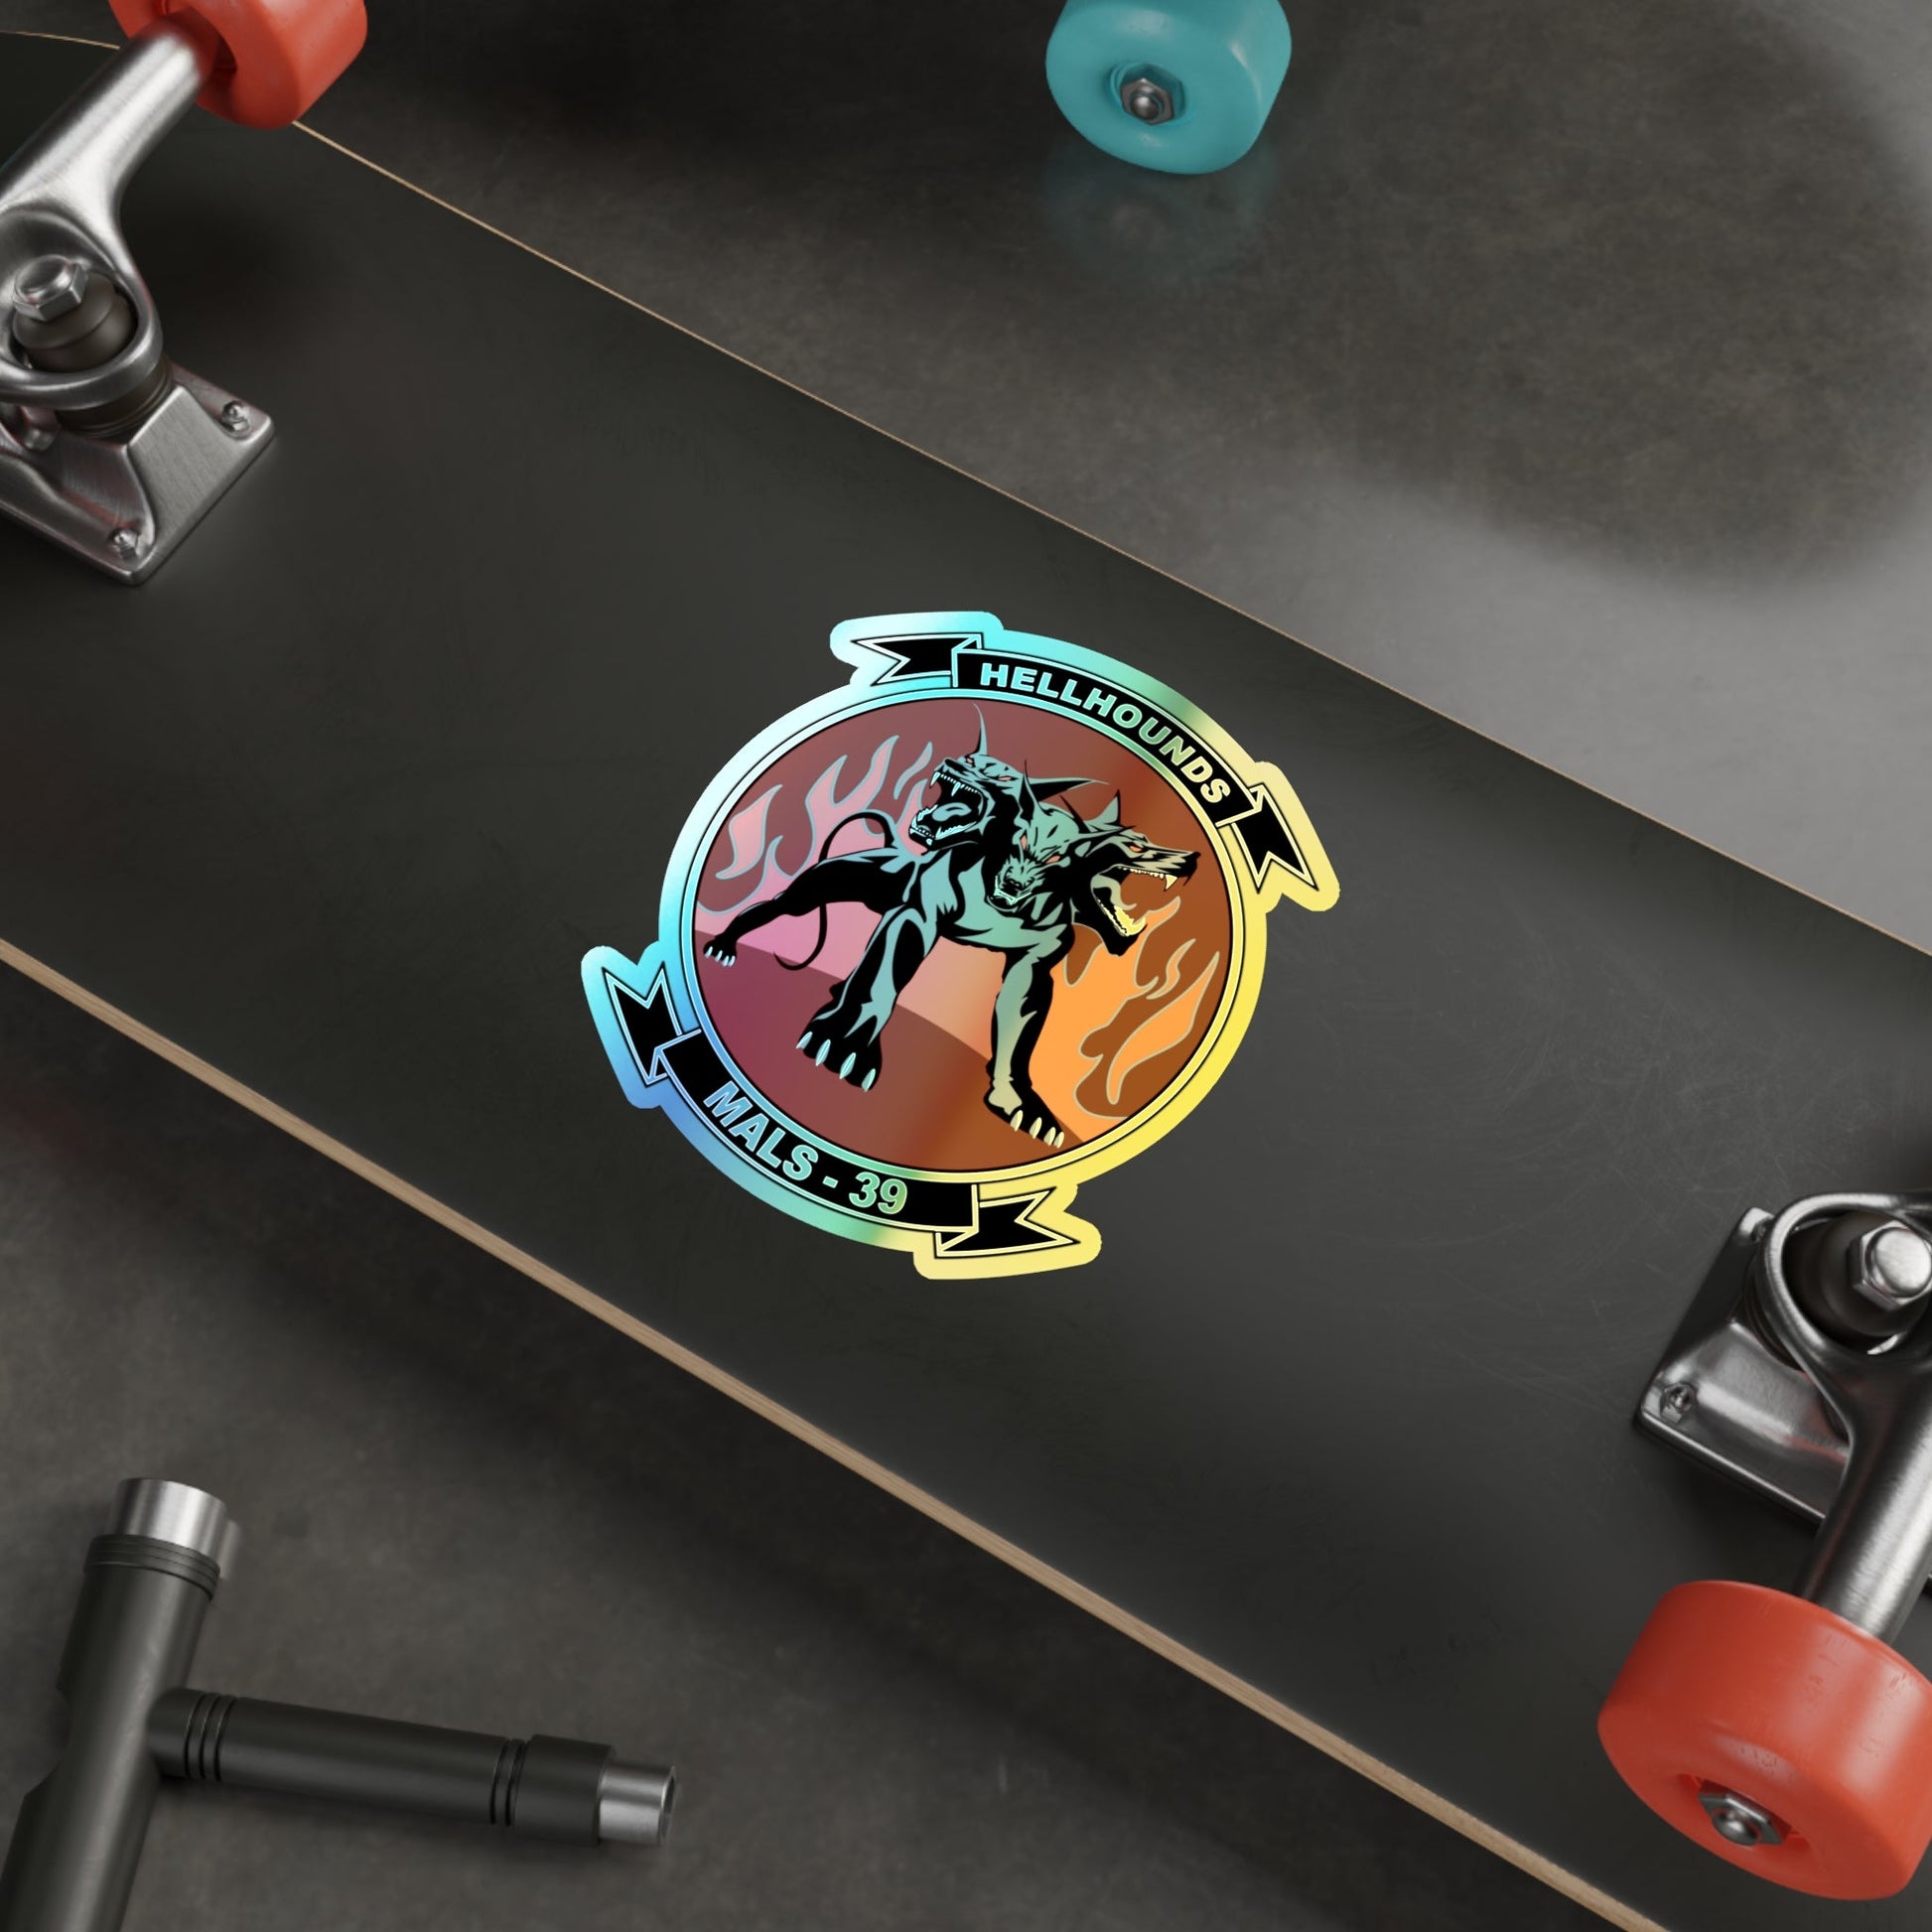 MALS 39 Hellhounds (USMC) Holographic STICKER Die-Cut Vinyl Decal-The Sticker Space